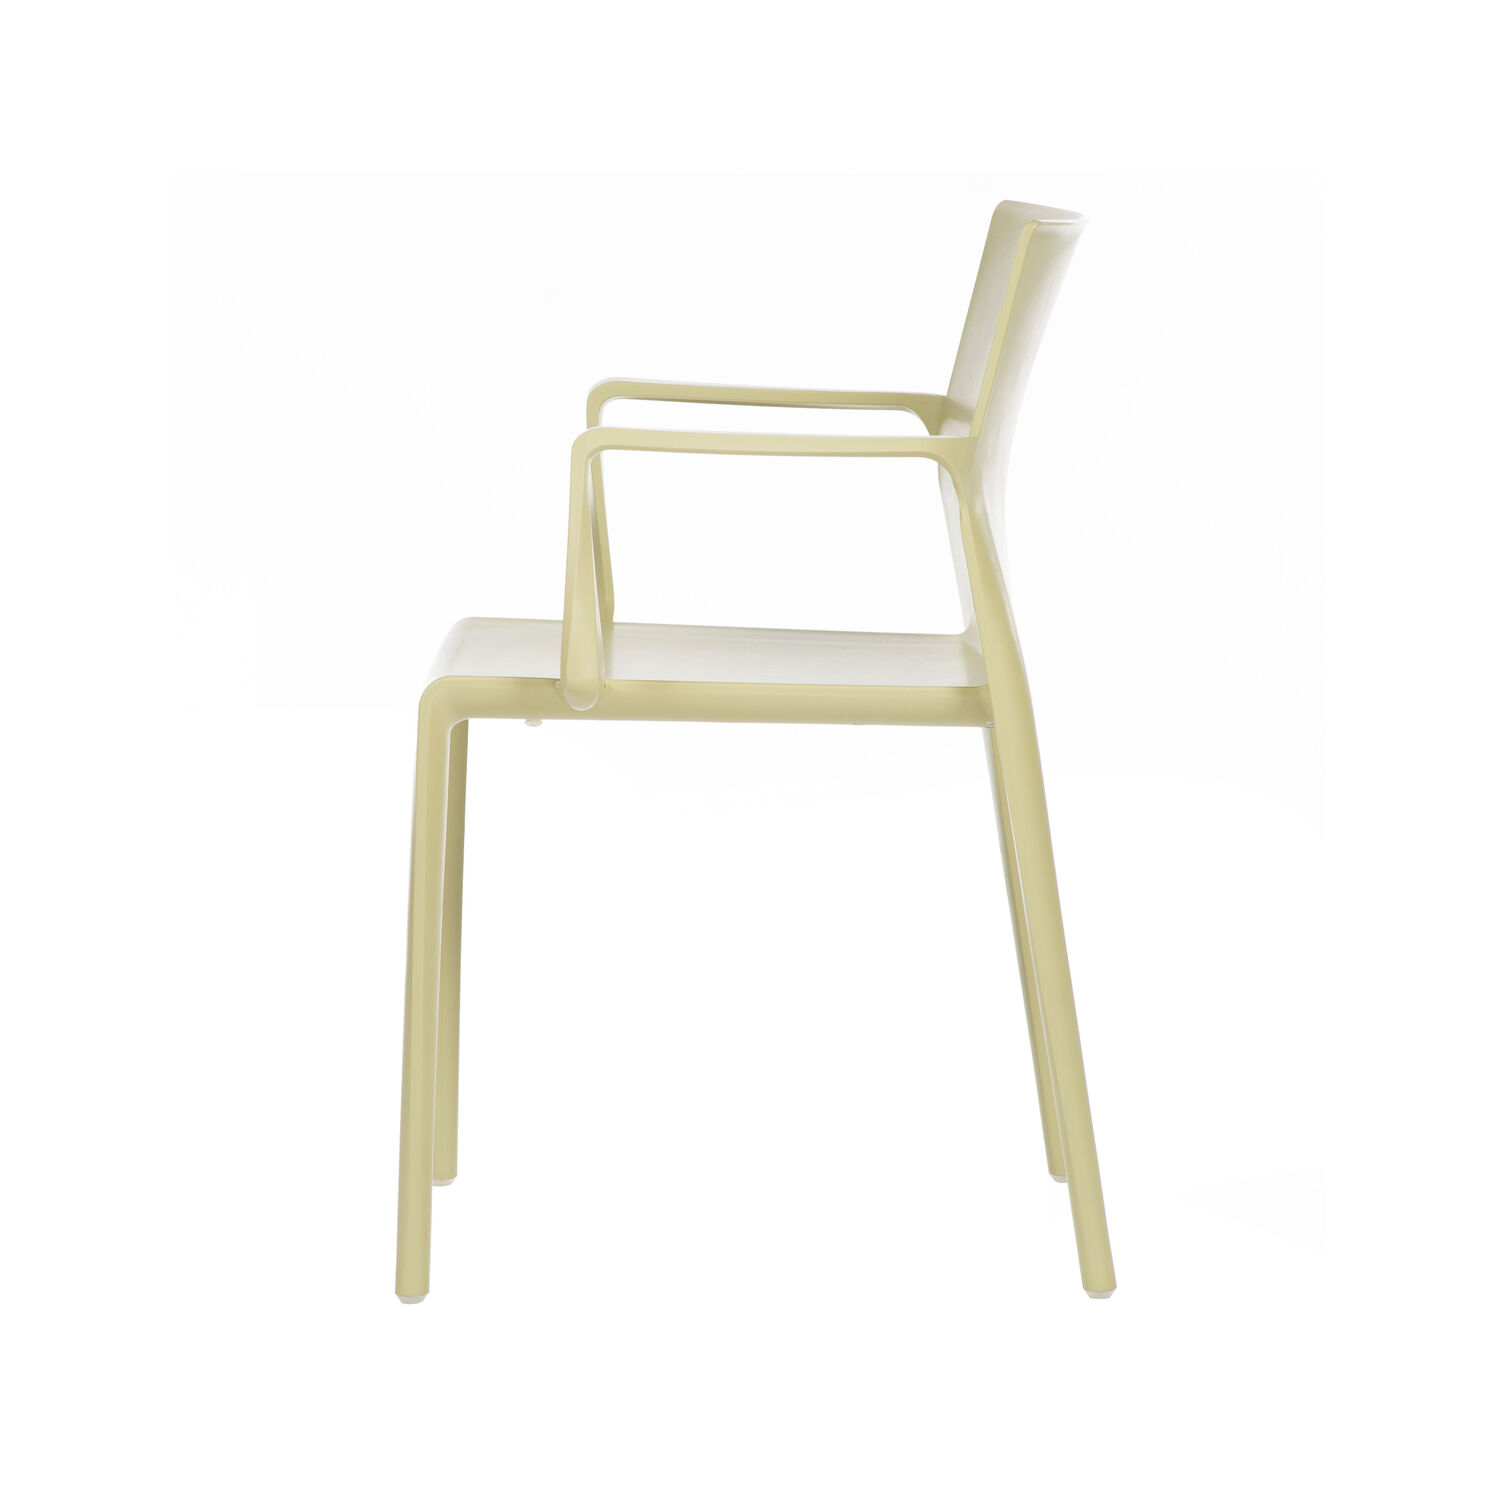 Hita Chair Arms (3)